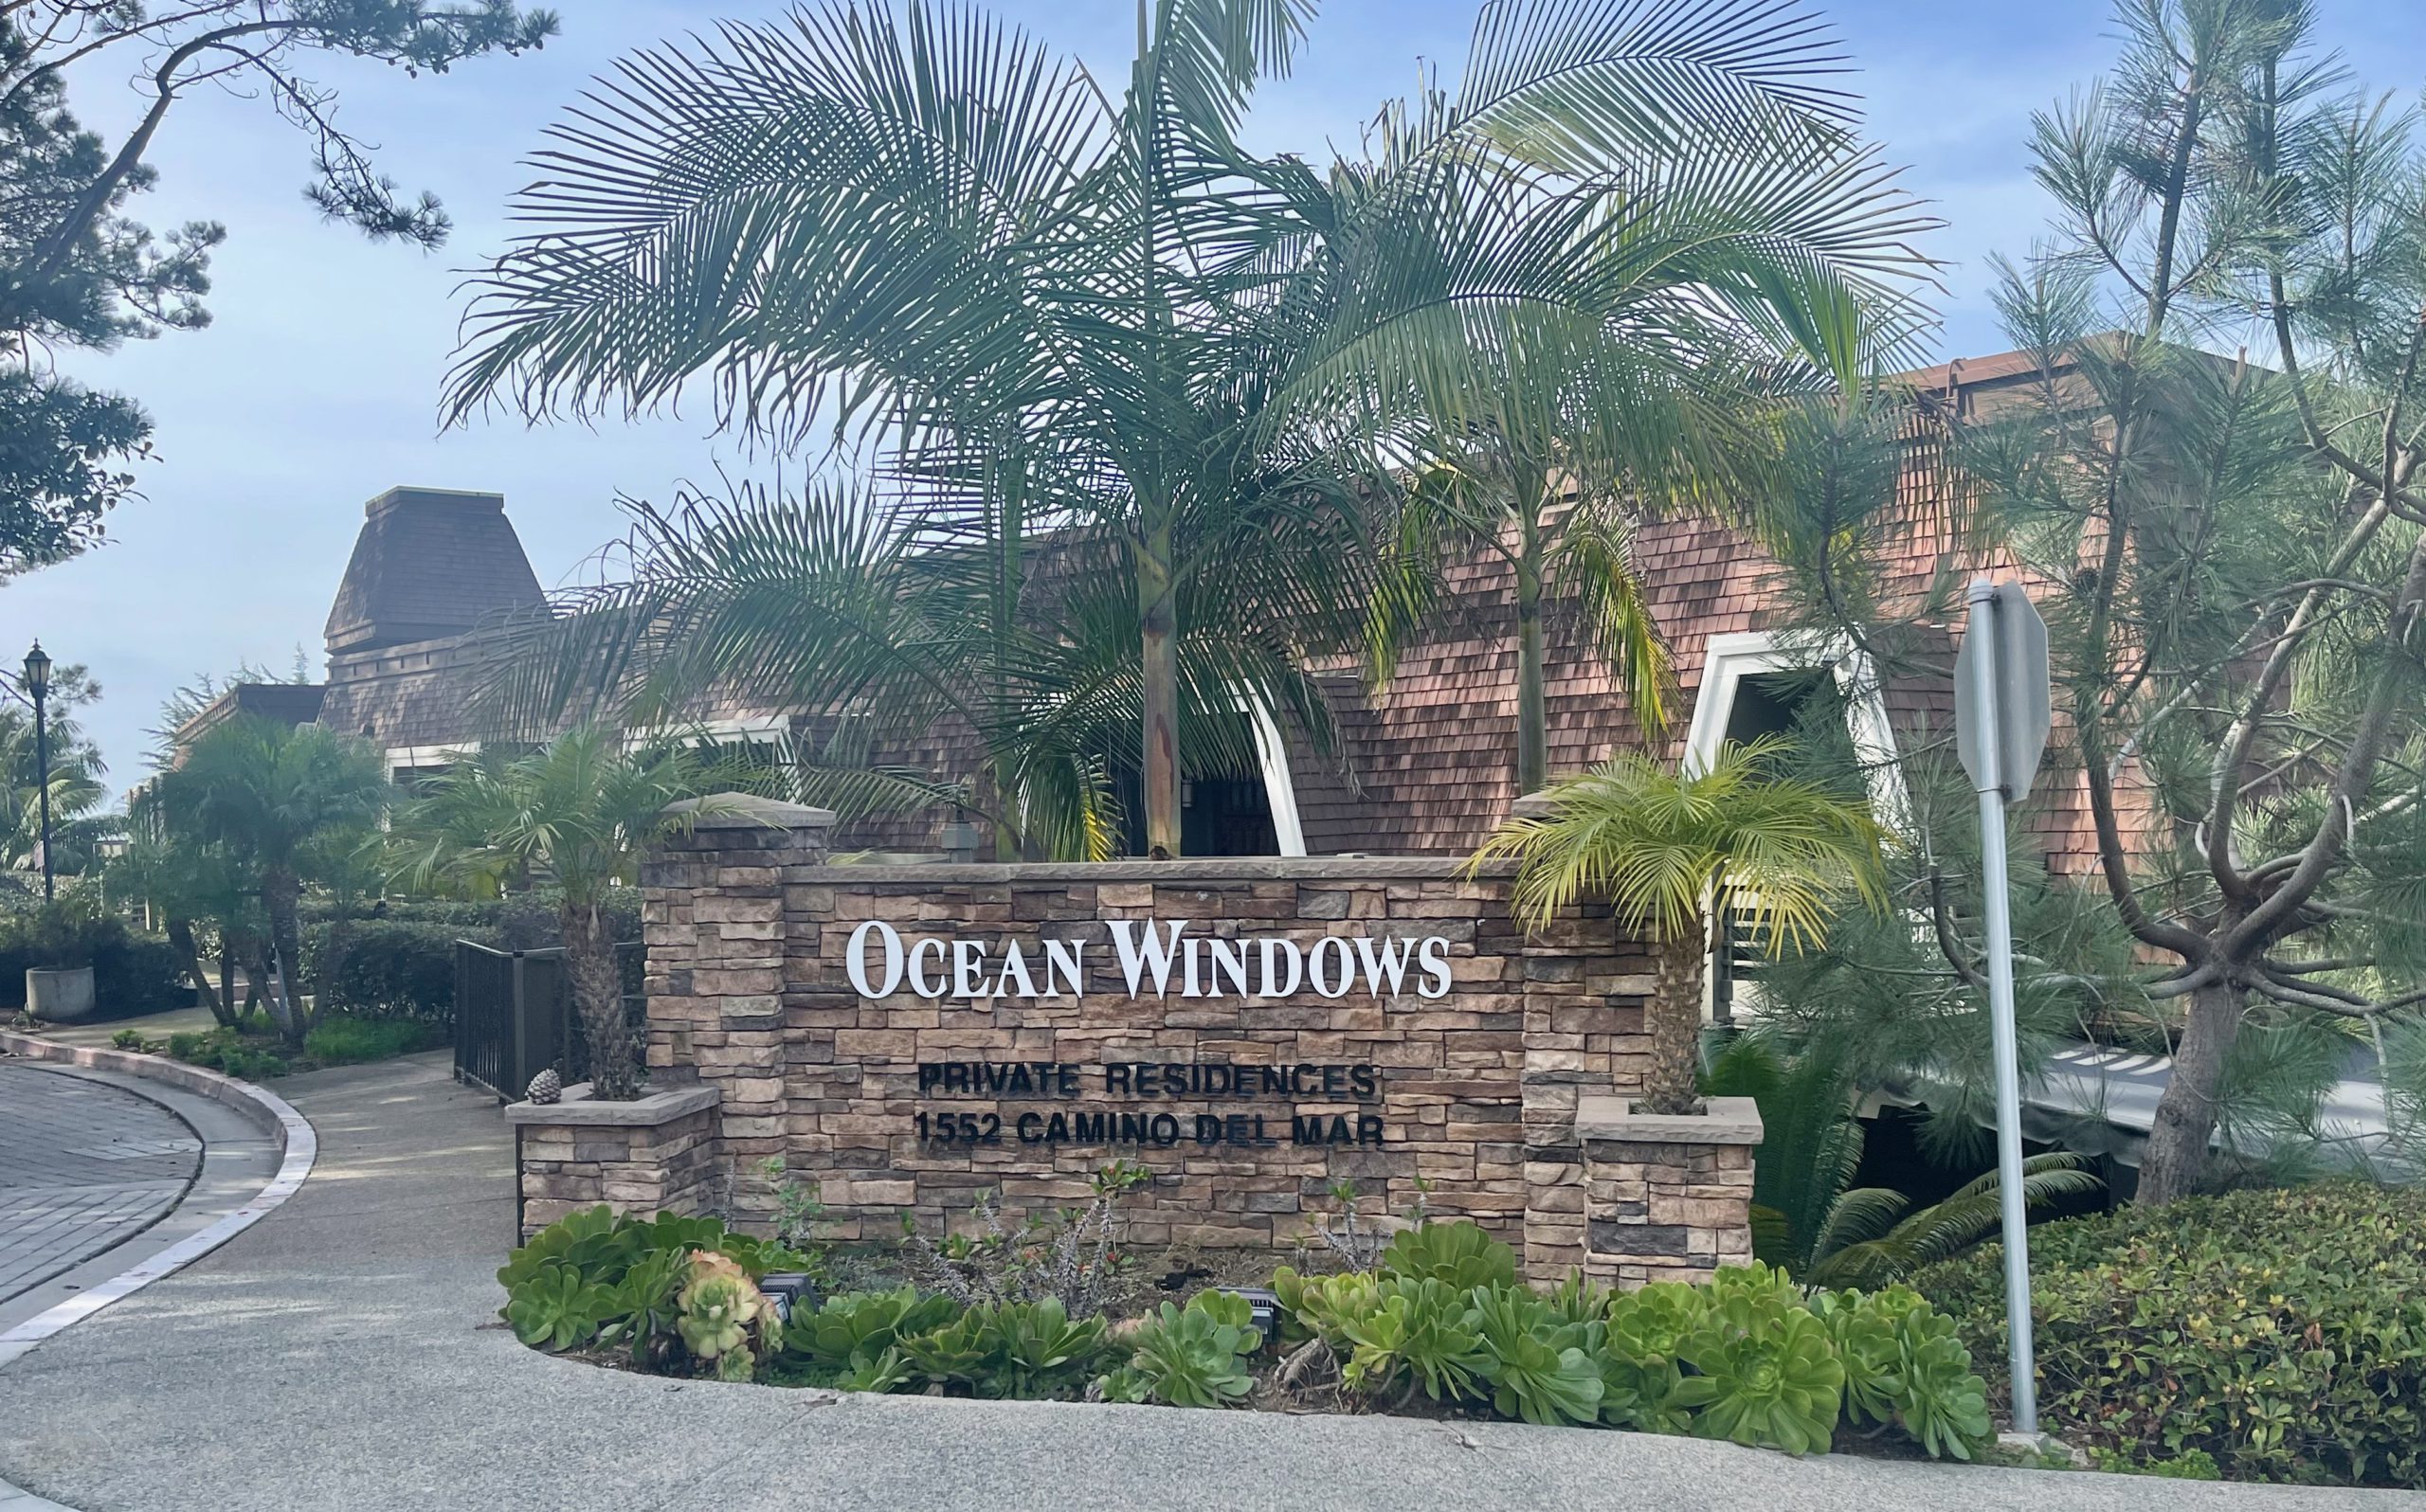 Ocean Windows Condominiums, Del Mar, 92014